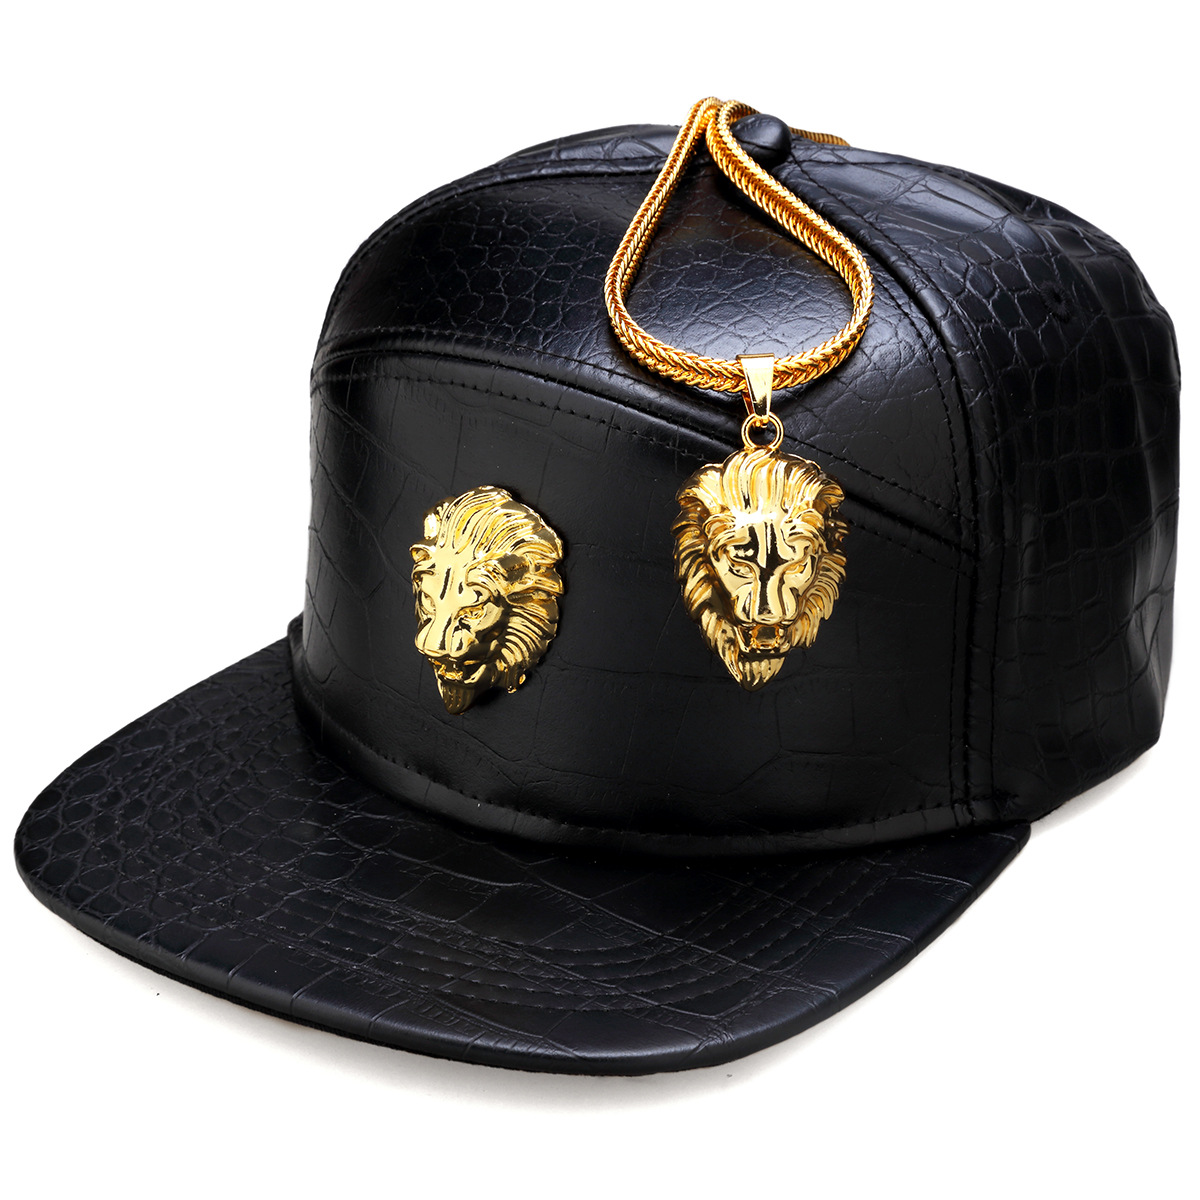 Hip Hop Hat,Flat-Brimmed Hat,Rock Cap,Adjustable Snapback Hat for Men and Women